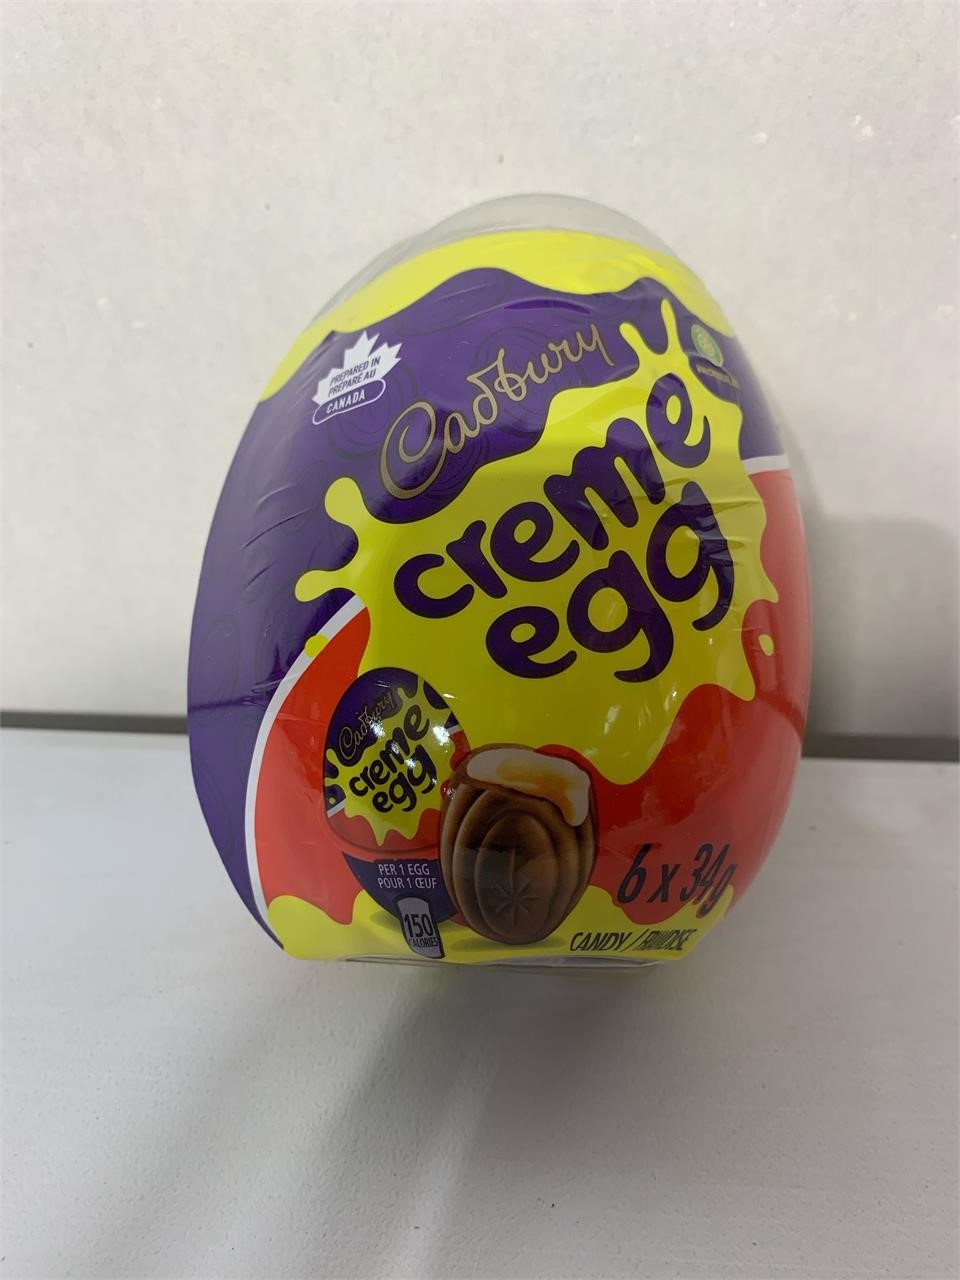 Cadbury
Crème Egg 6/34g